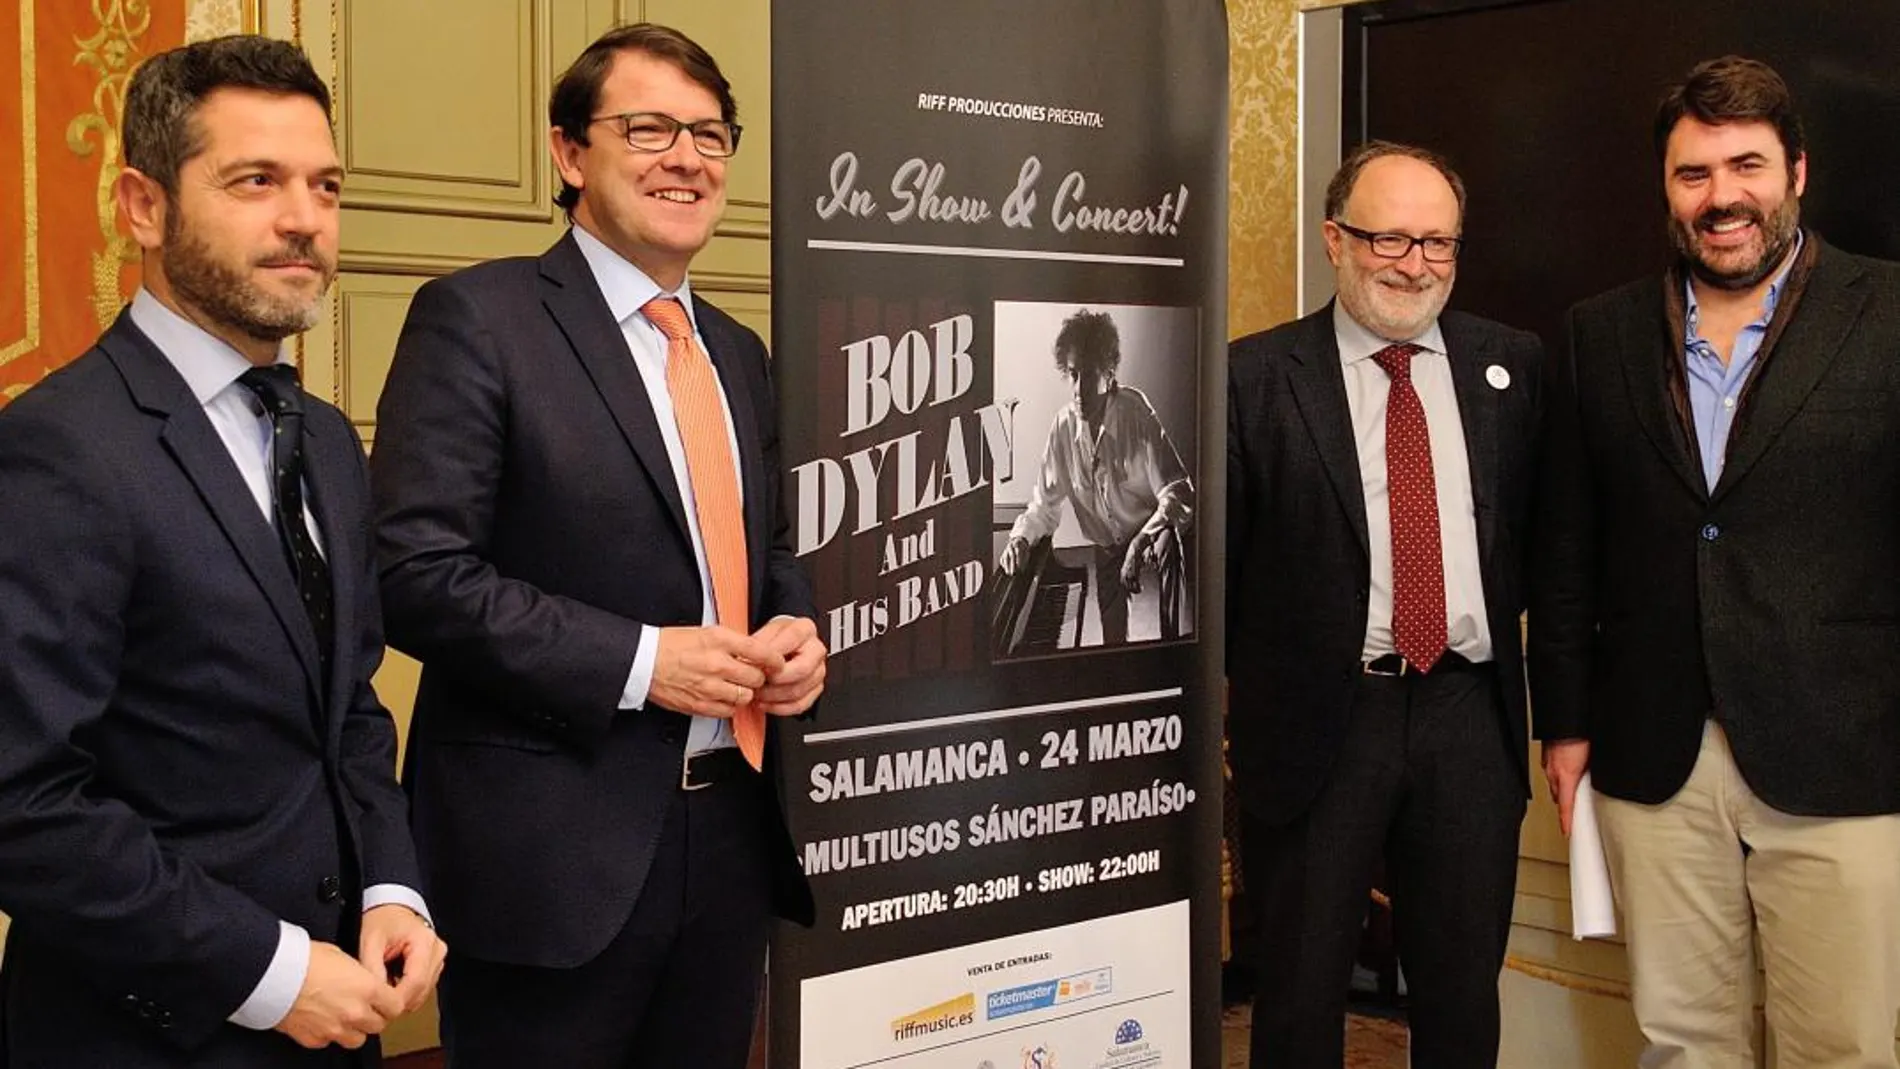 El alcalde de Salamanca, Alfonso Fernández Mañueco, presenta el concierto de Bob Dylan